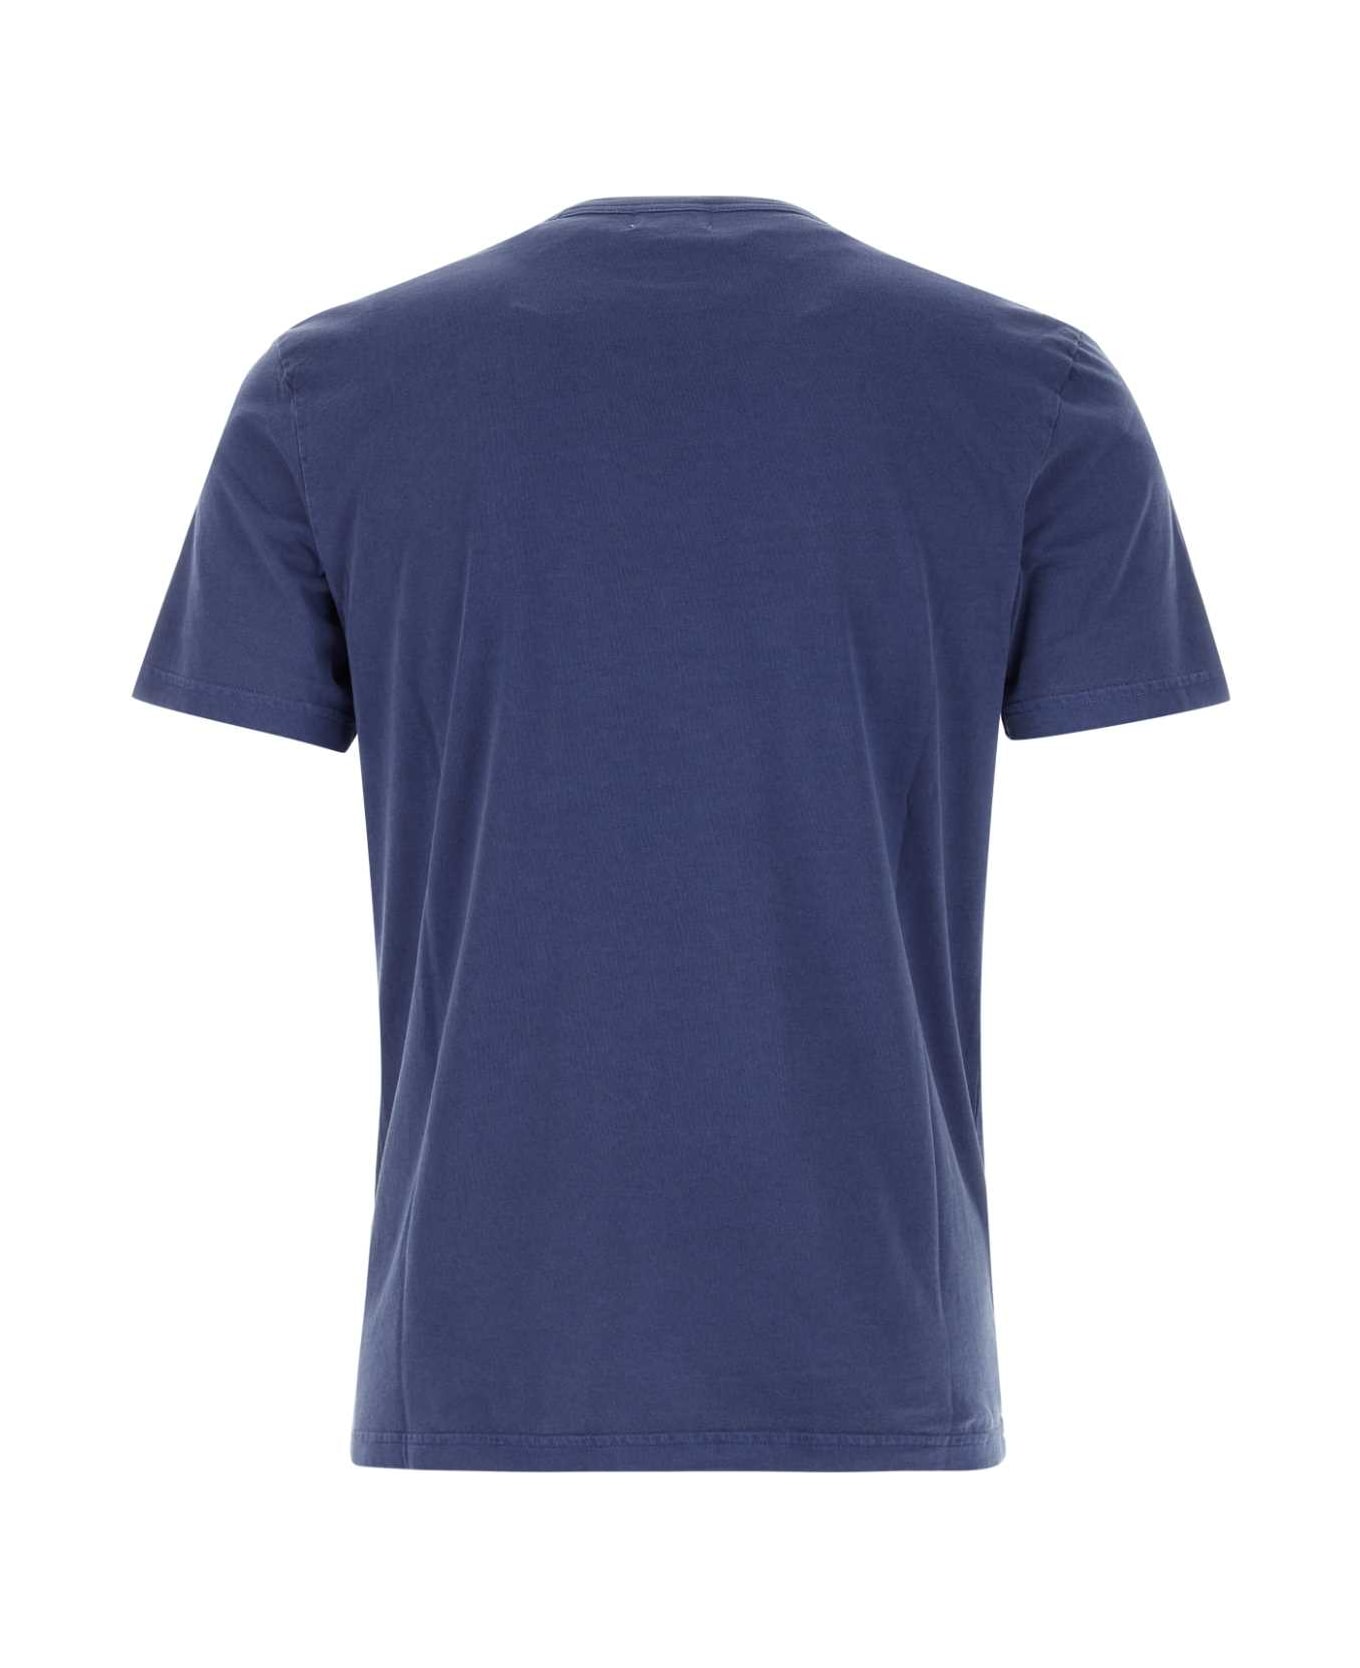 Woolrich Blue Cotton T-shirt - 31108